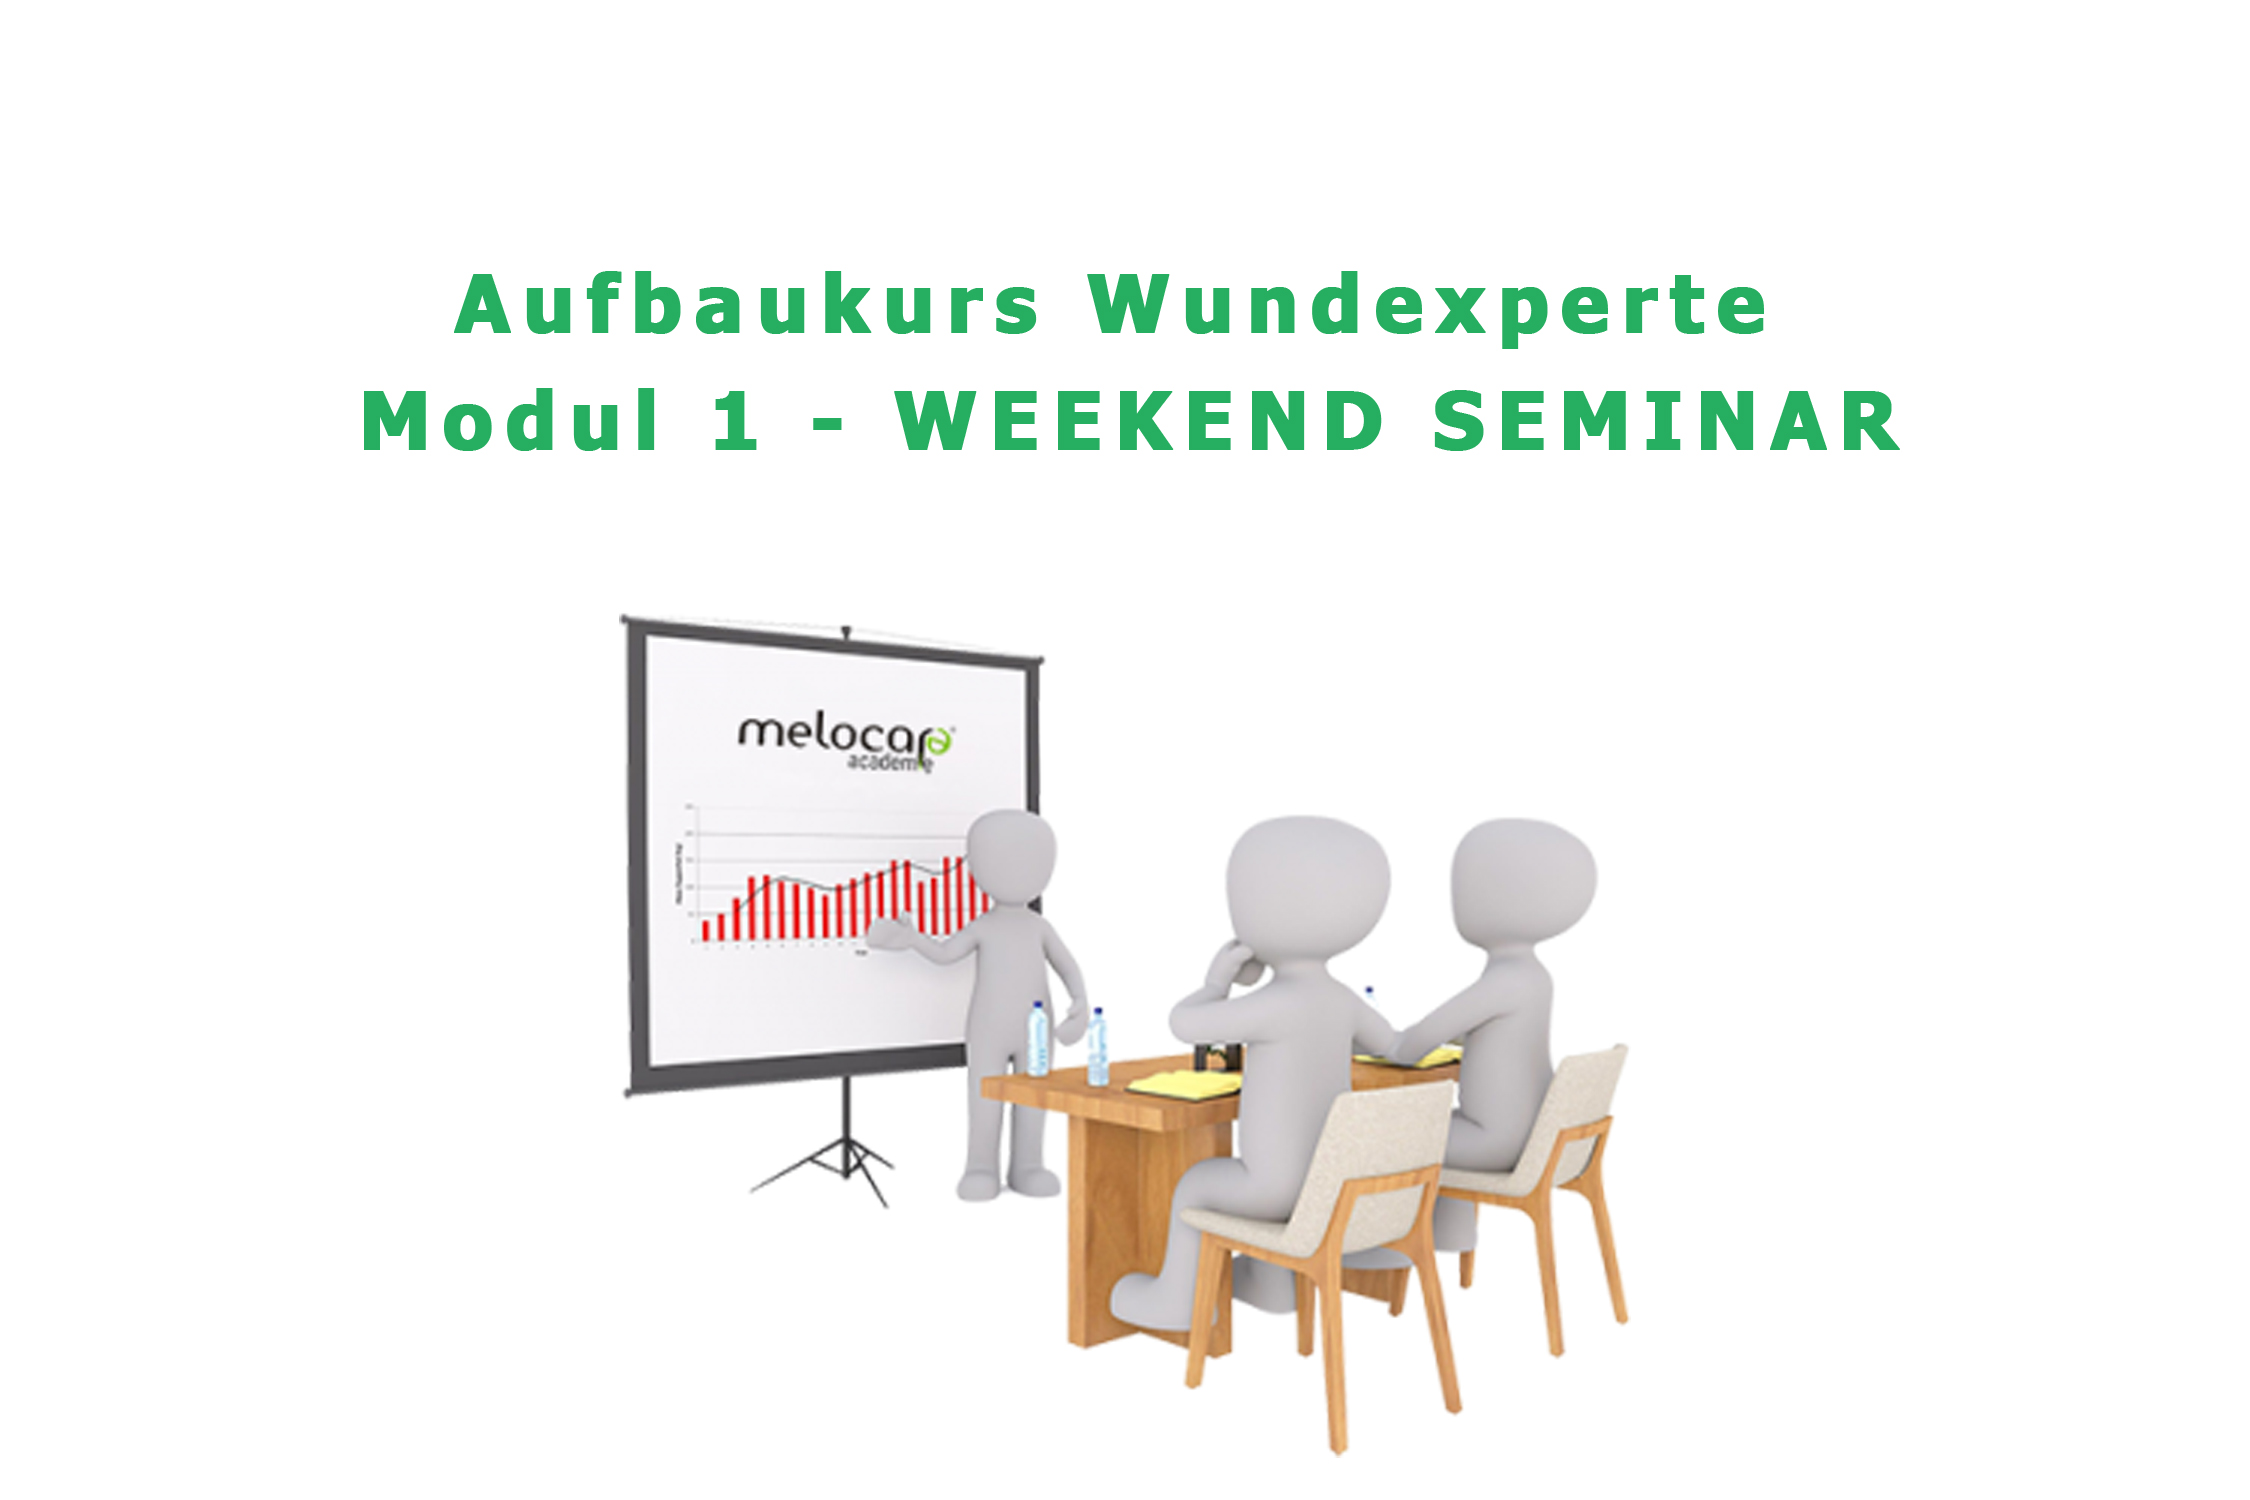 Aufbaukurs Wundexperte modul 1 weekend seminar